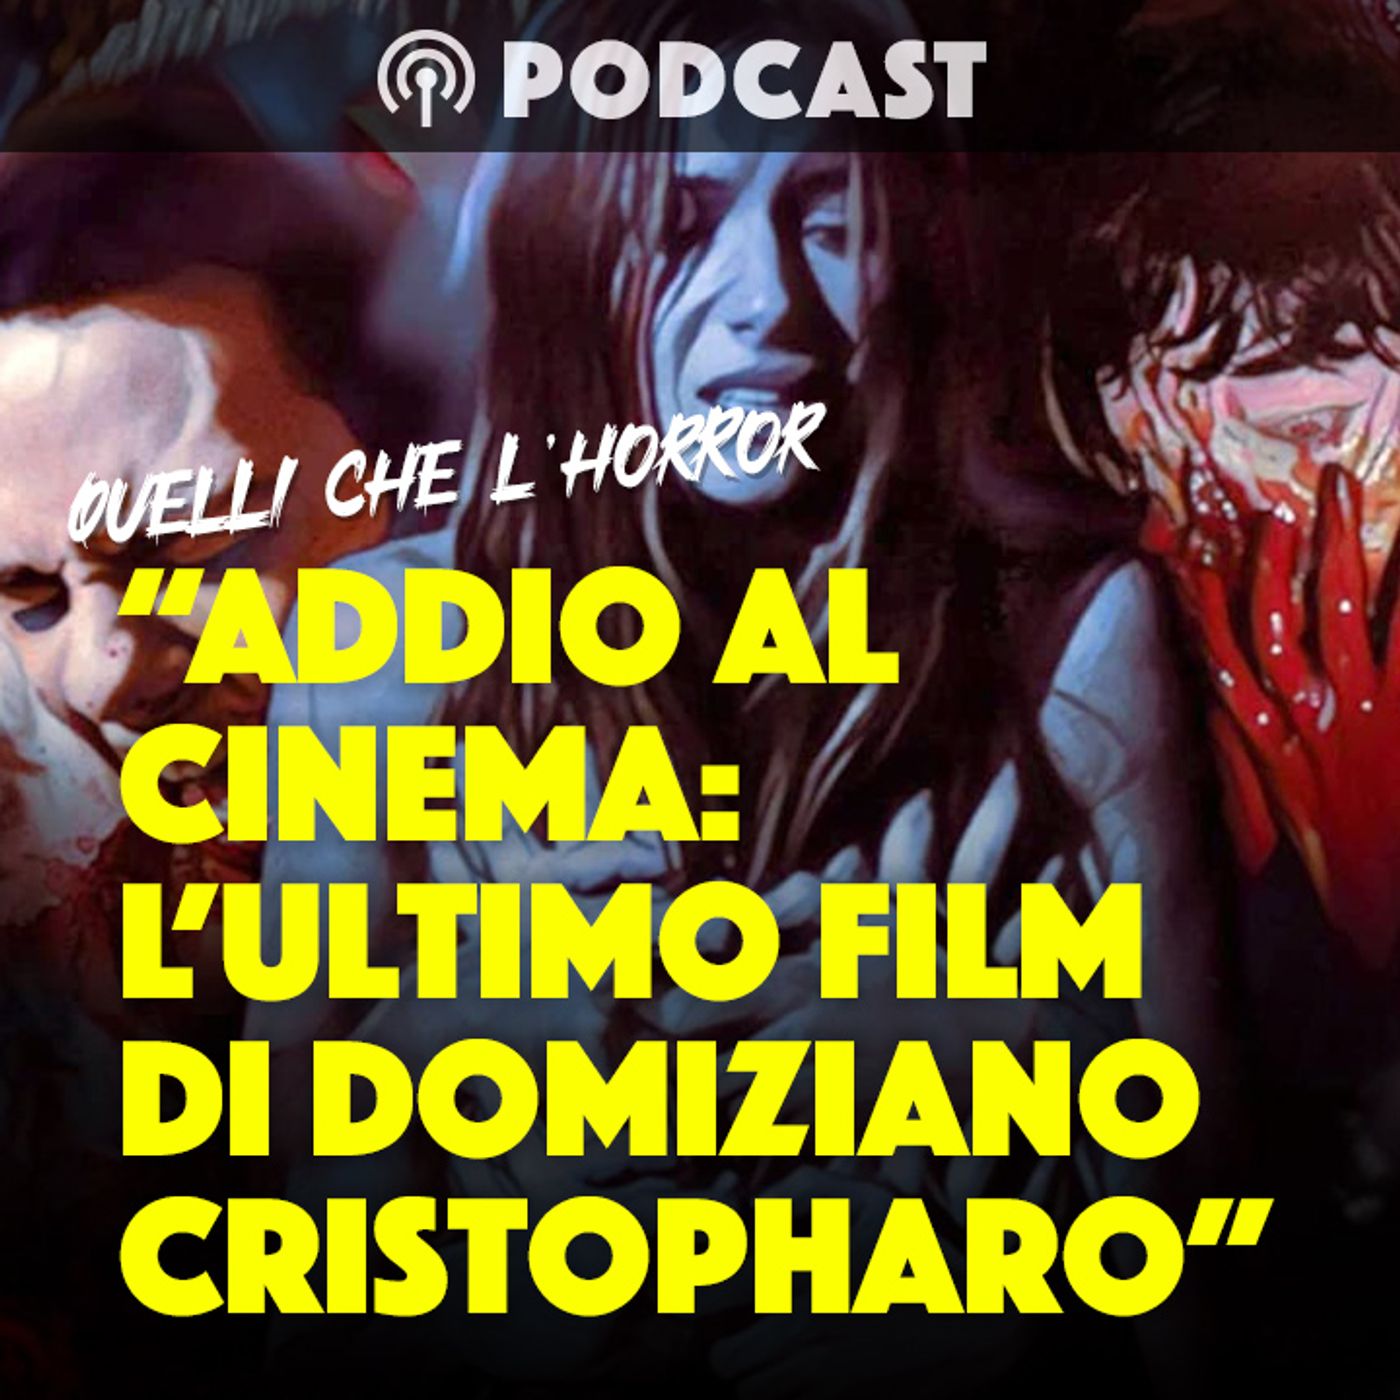 "ADDIO AL CINEMA HORROR: L'ULTIMO FILM DI DOMIZIANO CRISTOPHARO" - Quelli che l'horror